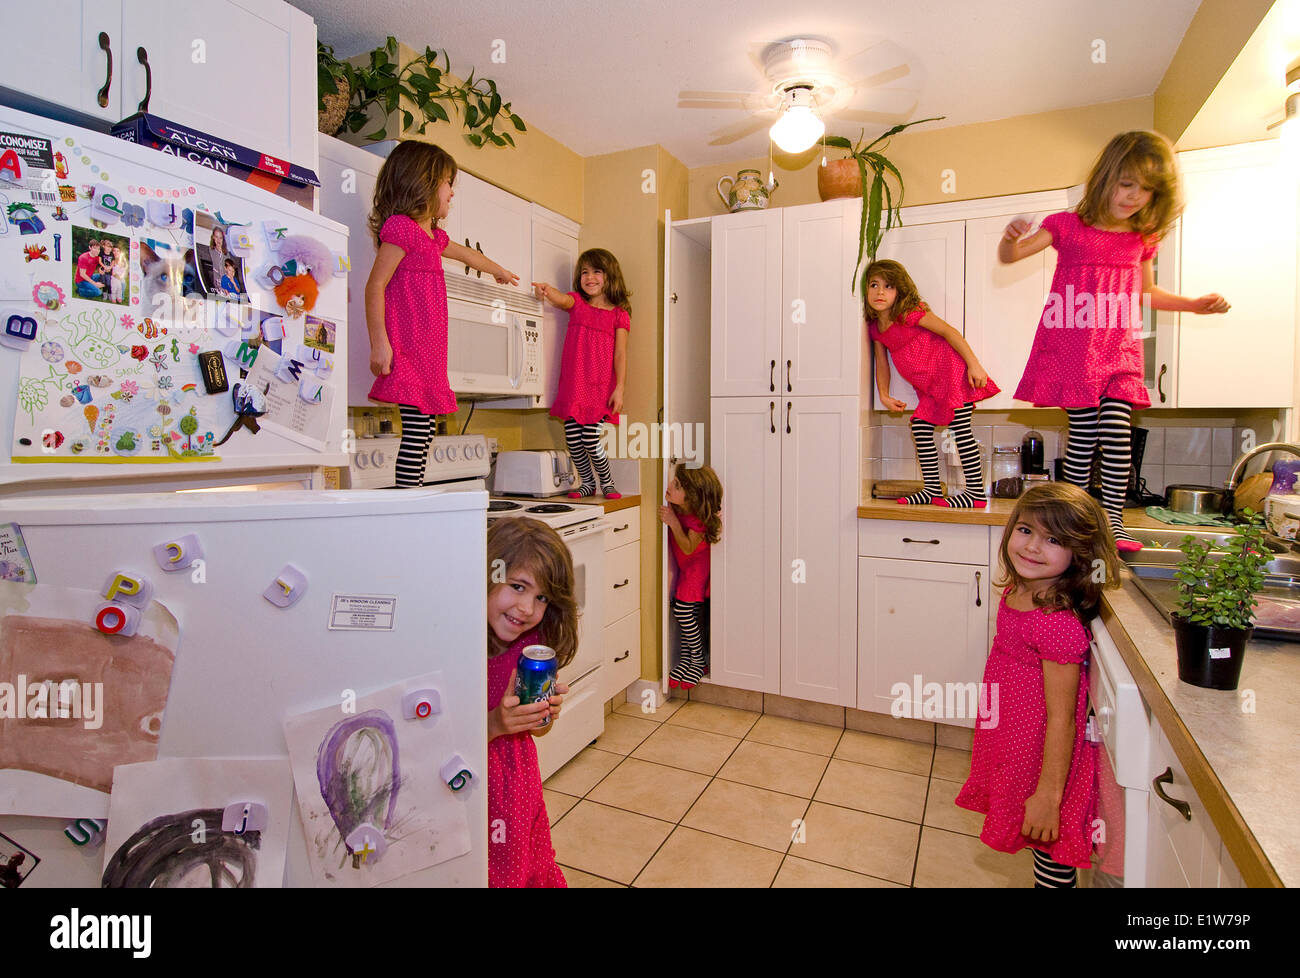 Giovane ragazza ha alcuni cucina divertimento durante questa molteplicità immagine composita Foto Stock